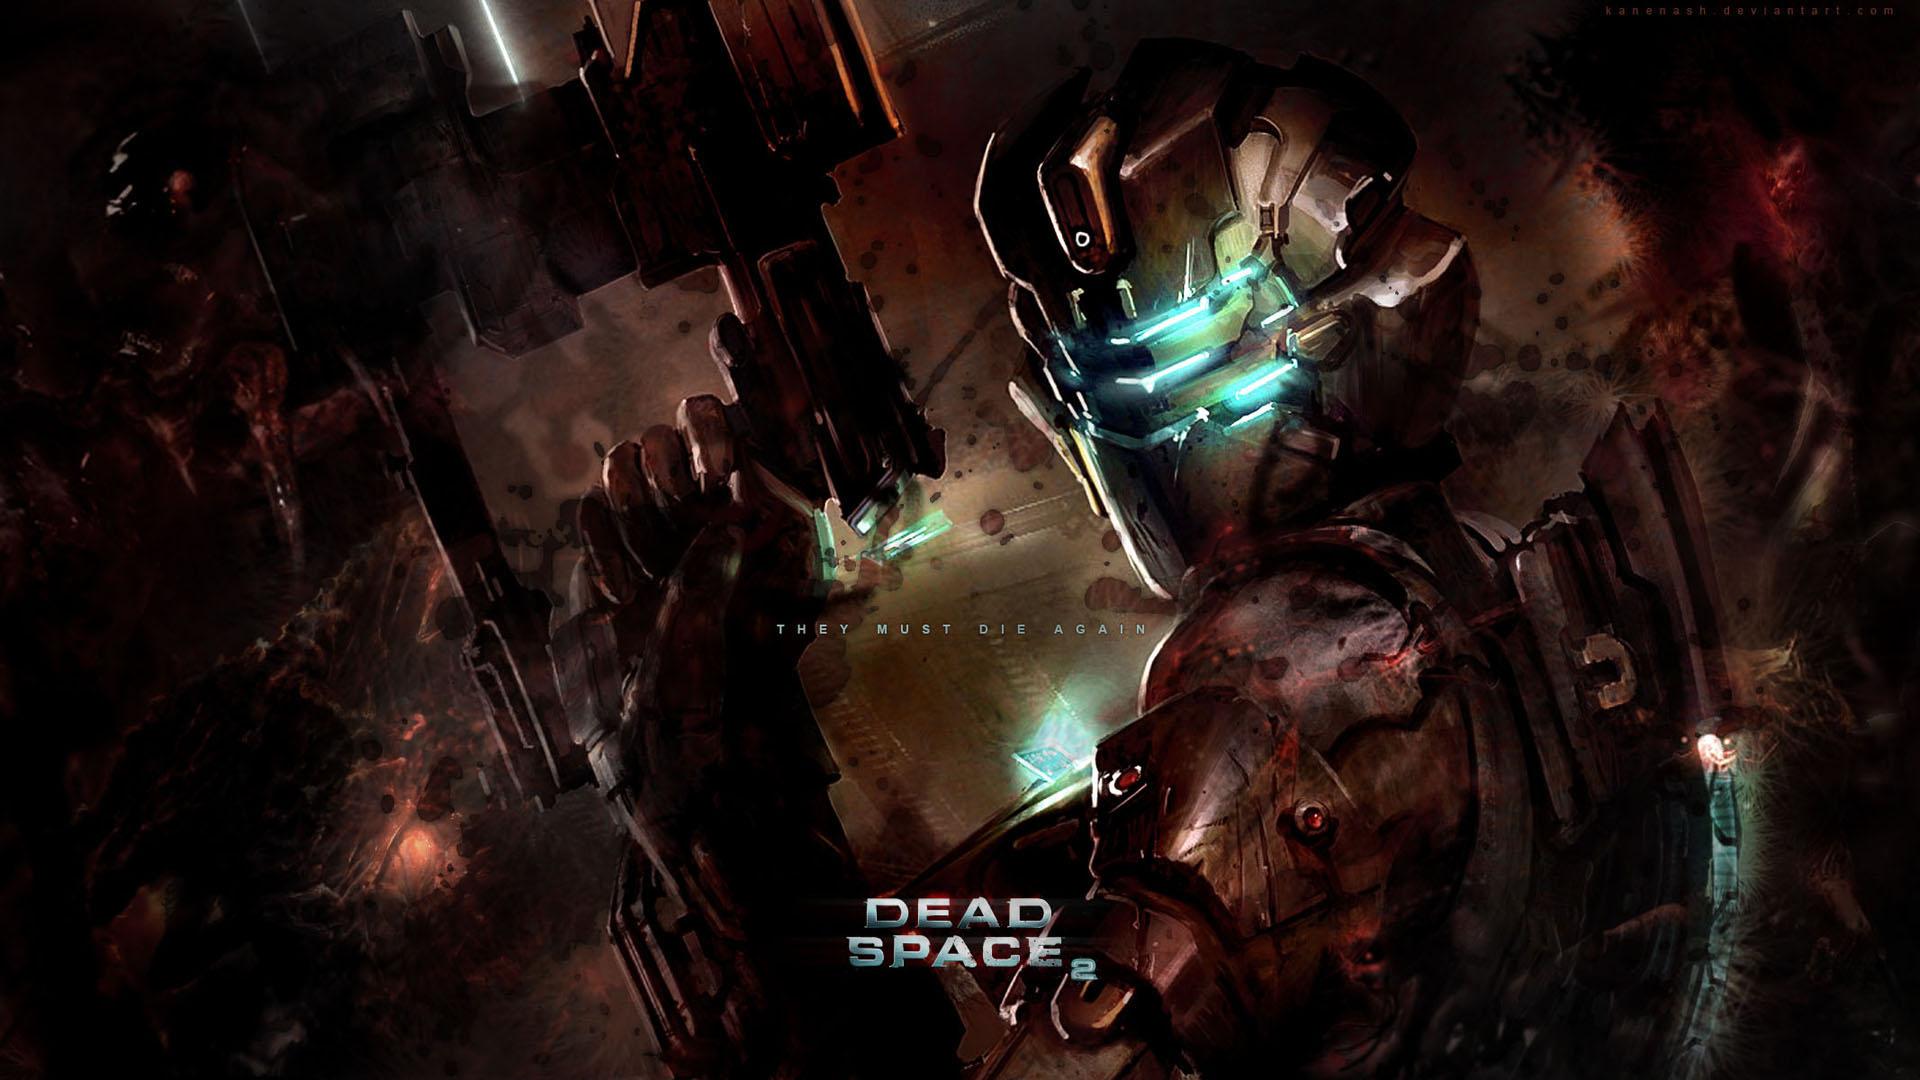 DEAD SPACE 2 WALLPAPER - - HD Wallpapers